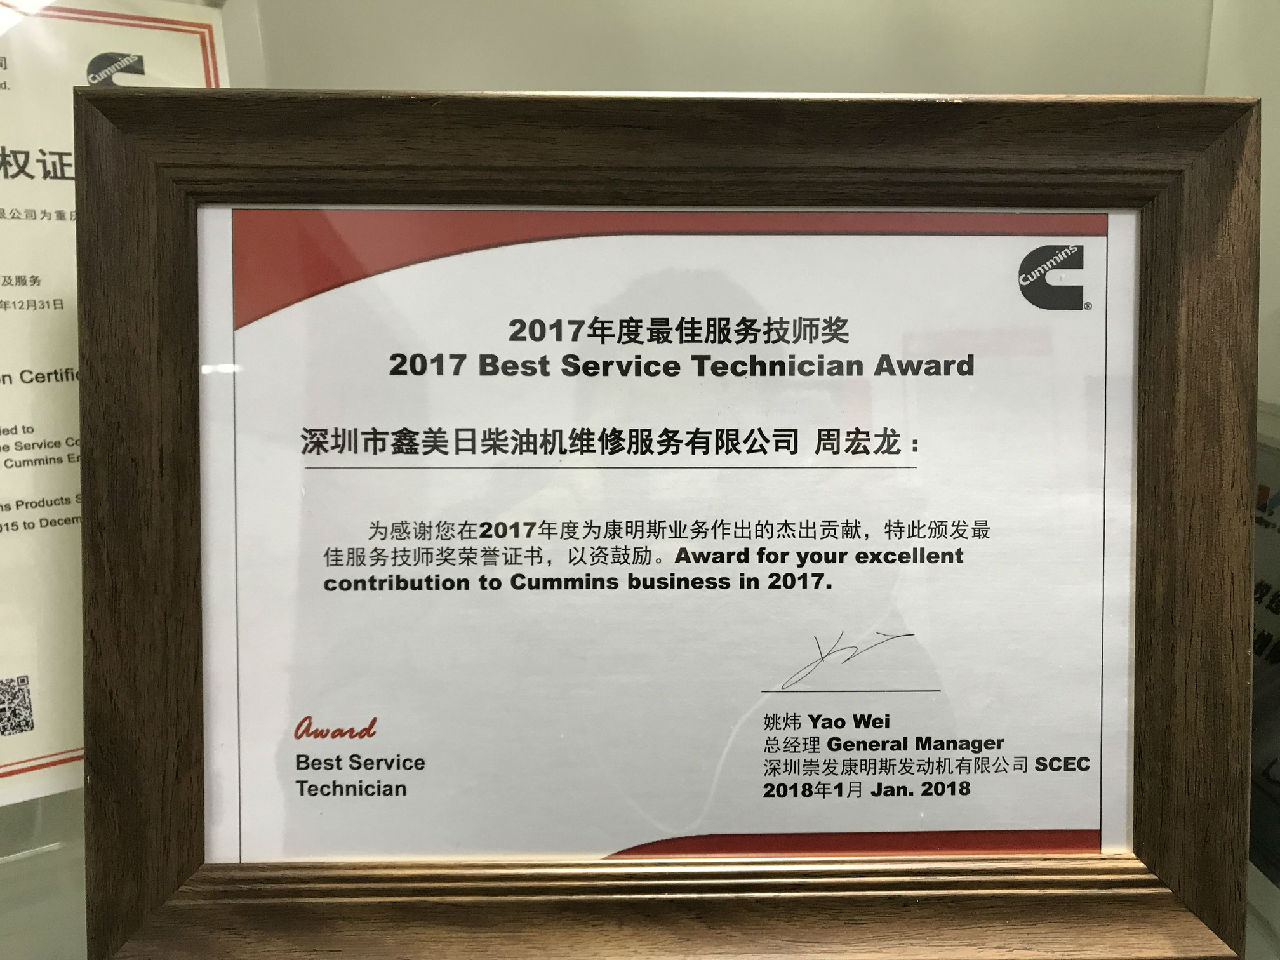 2017年度最佳服务技师奖 周宏龙 _c